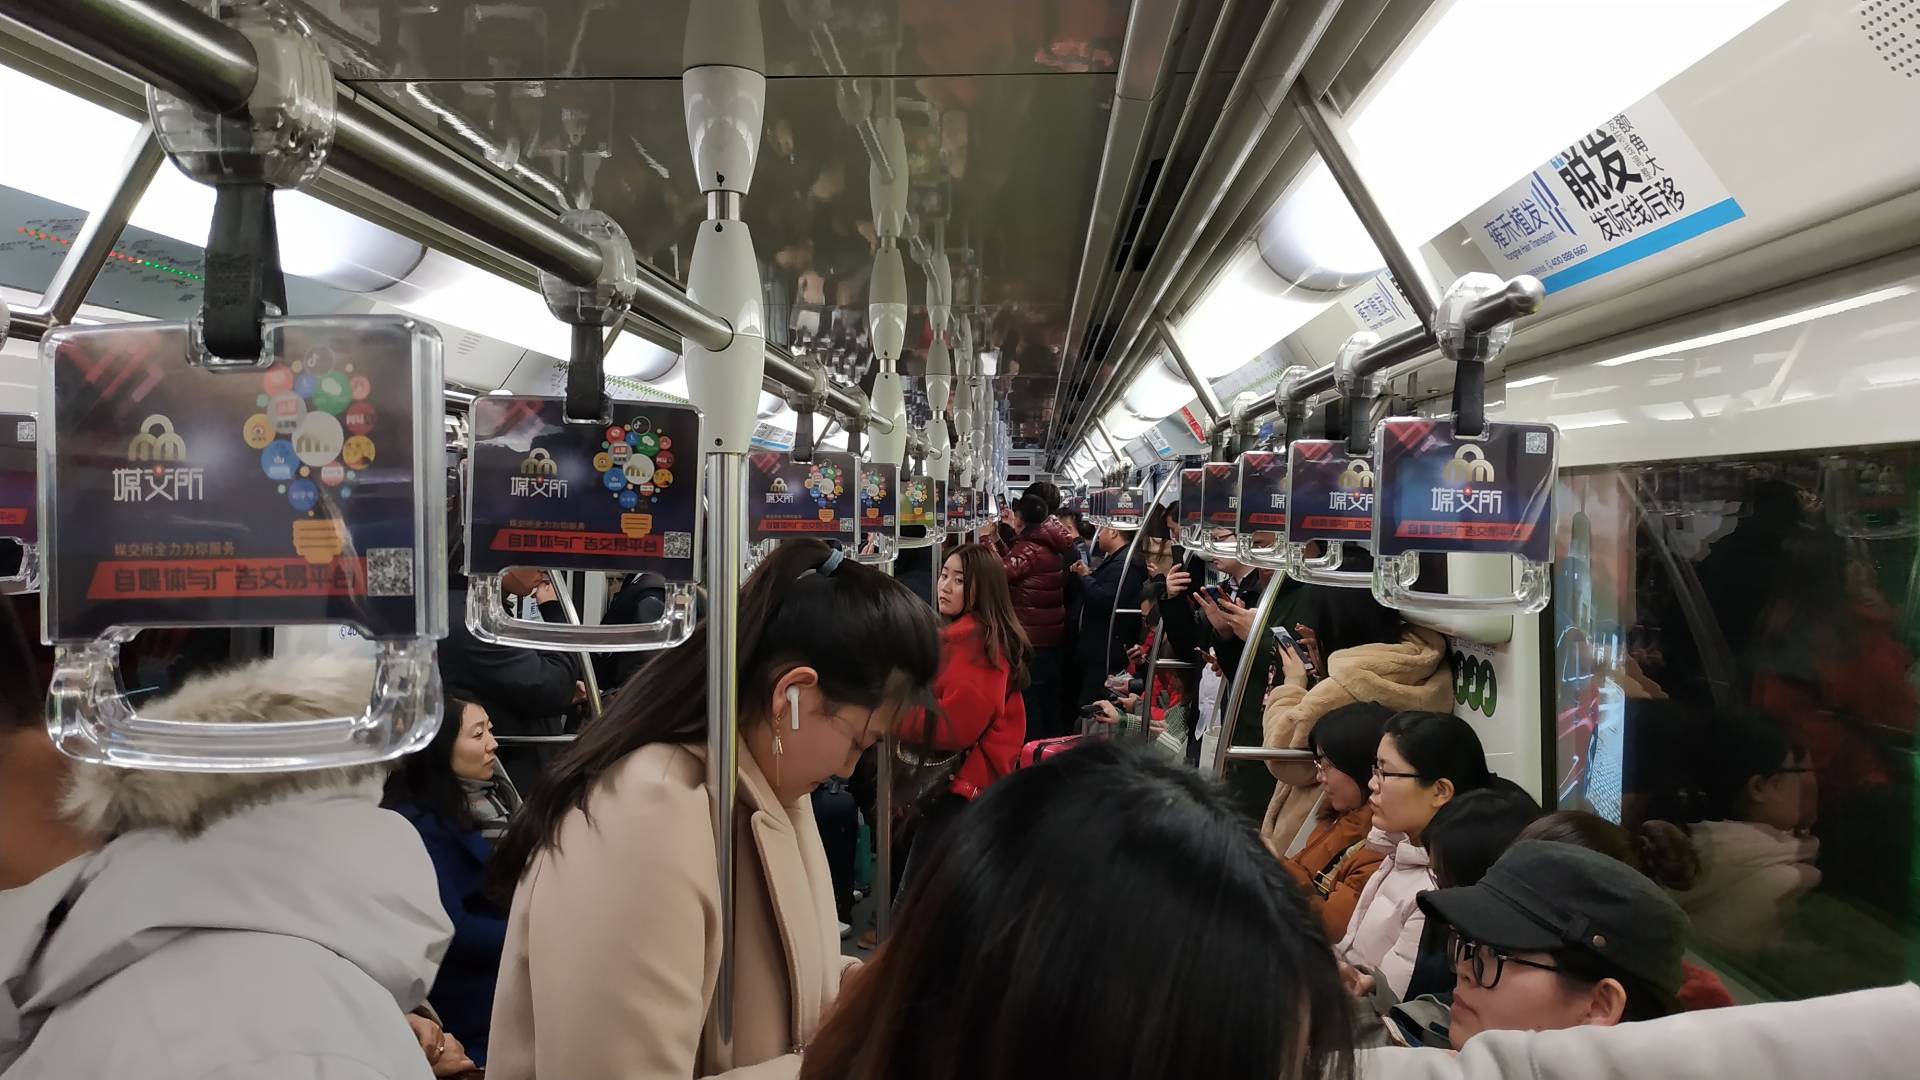 Все поезда шанхайской подземки оборудованы автоматическим управлением. Платформа огорожена дверьми, которые открываются непосредственно по прибытии поезда. Внутри состава нет дверей и перегородок, что позволяет максимально использовать полезное пространство